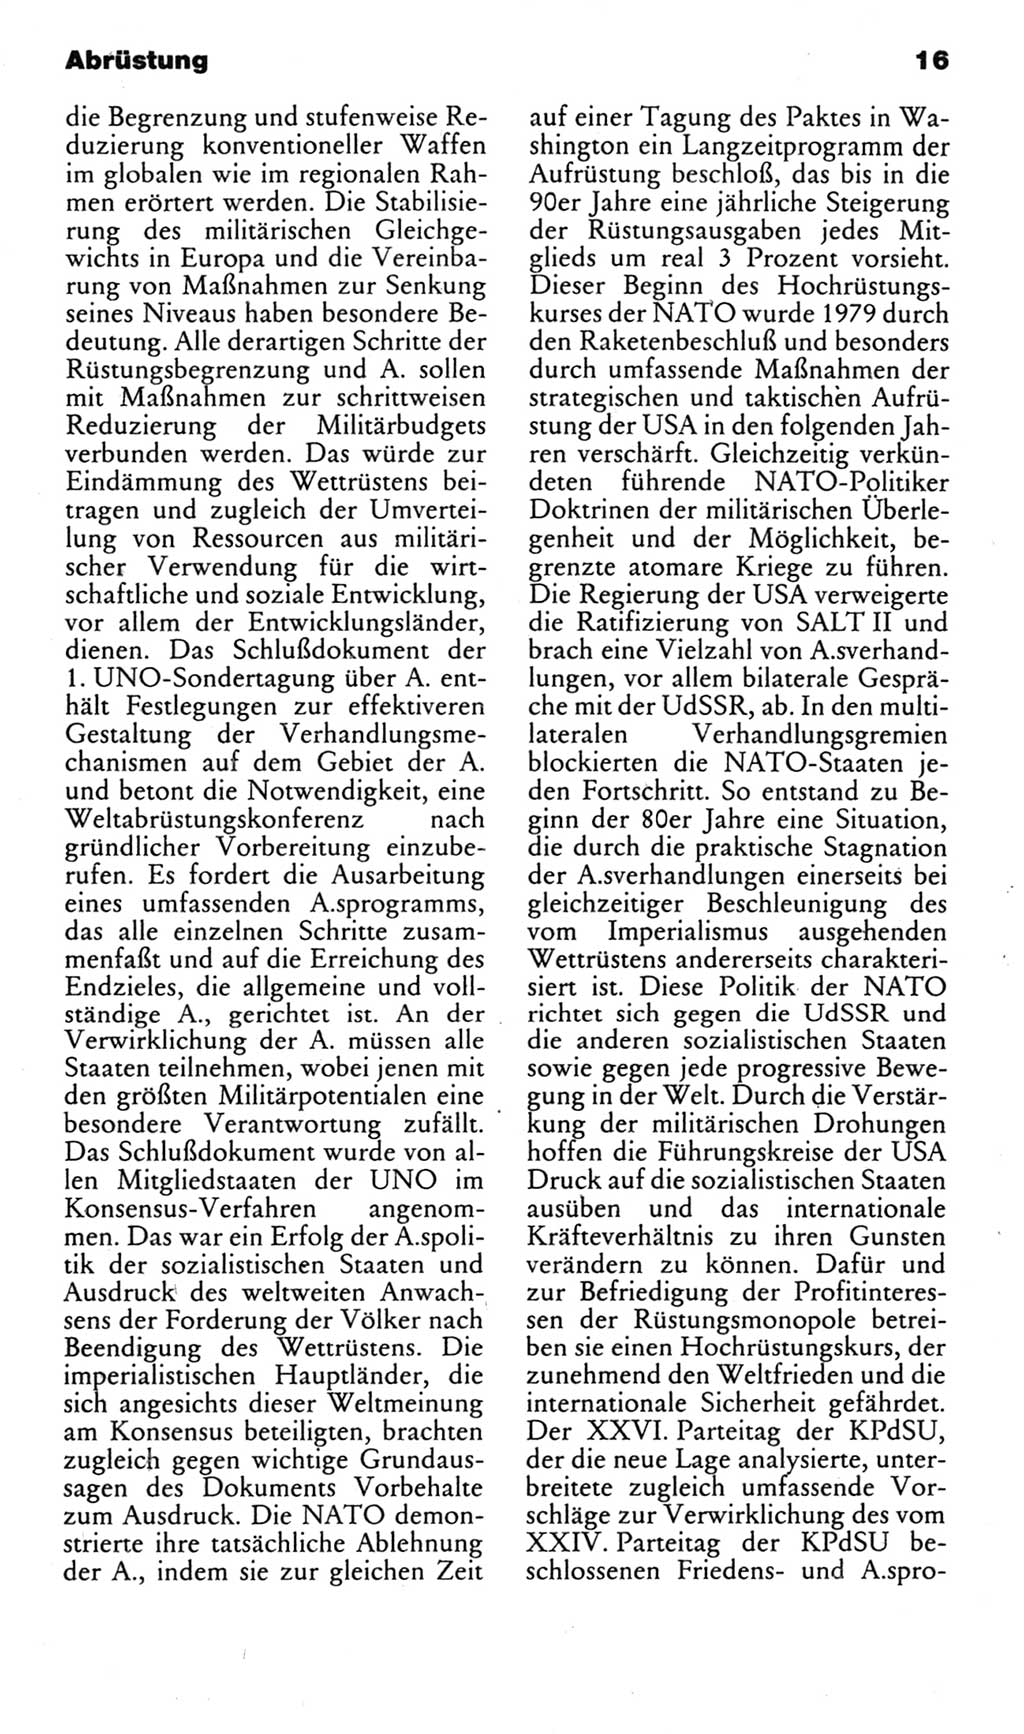 Kleines politisches Wörterbuch [Deutsche Demokratische Republik (DDR)] 1983, Seite 16 (Kl. pol. Wb. DDR 1983, S. 16)